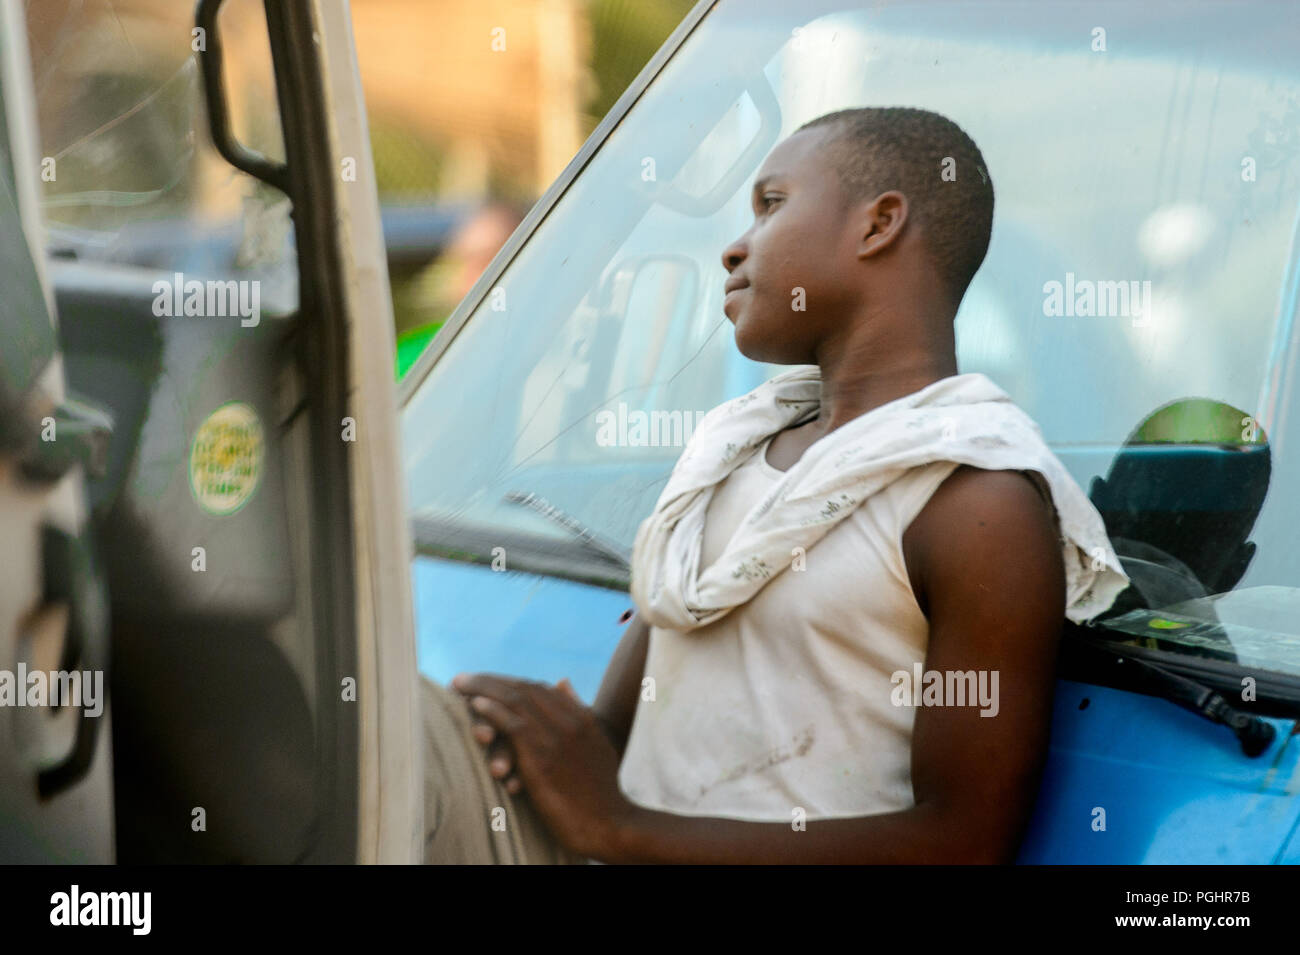 OUIDAH, BENIN - Jan 10, 2017: Unbekannter Beninischen jungen Mann im weißen Hemd lehnt sich an das Auto am lokalen Markt. Benin Menschen leiden unter der Armut durch Stockfoto